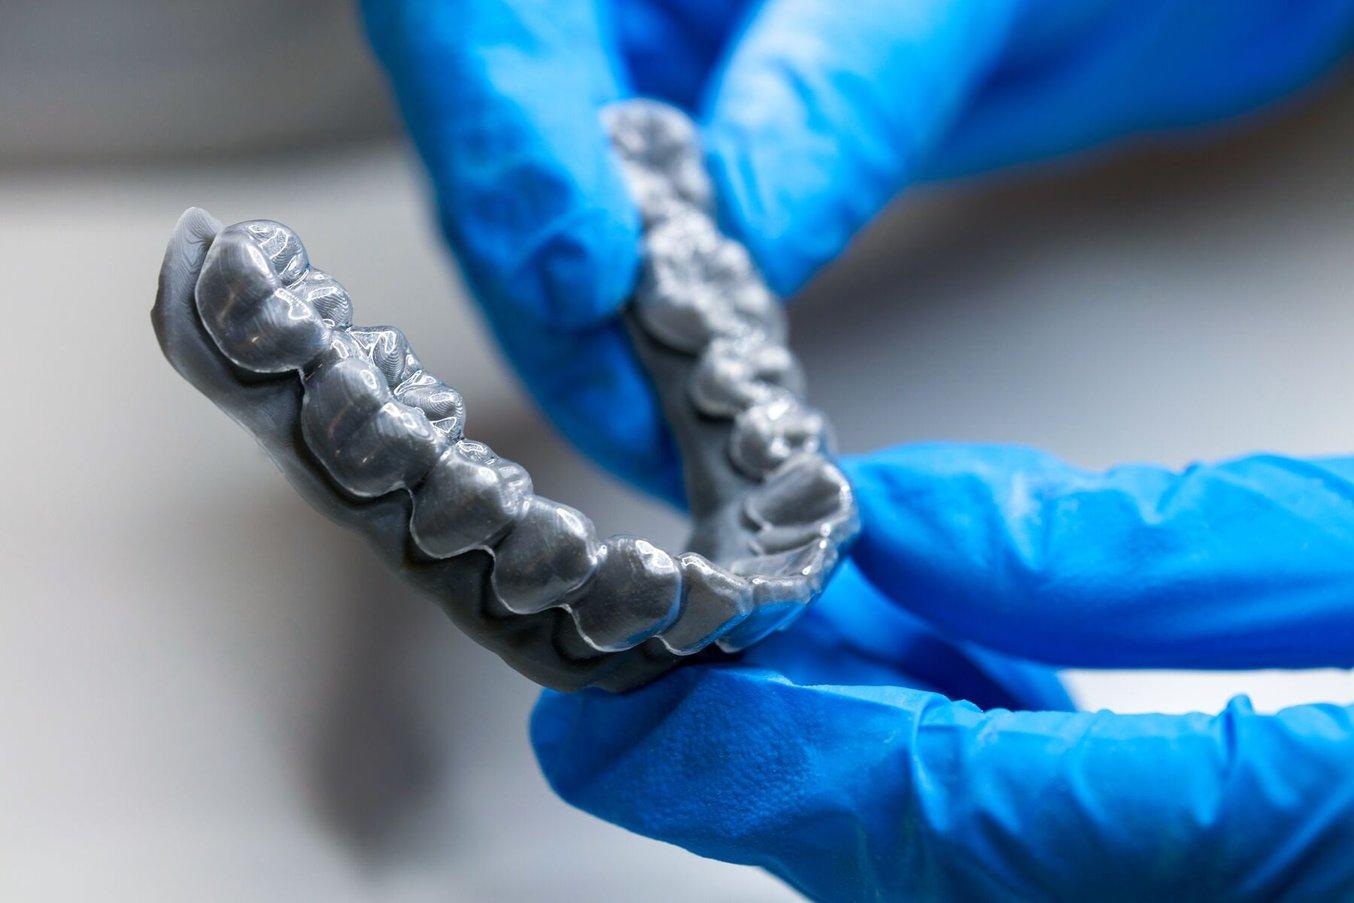 El moldeo en vacío y el conformado a presión sobre modelos impresos en 3D son los métodos habituales para producir alineadores transparentes de ortodoncia.